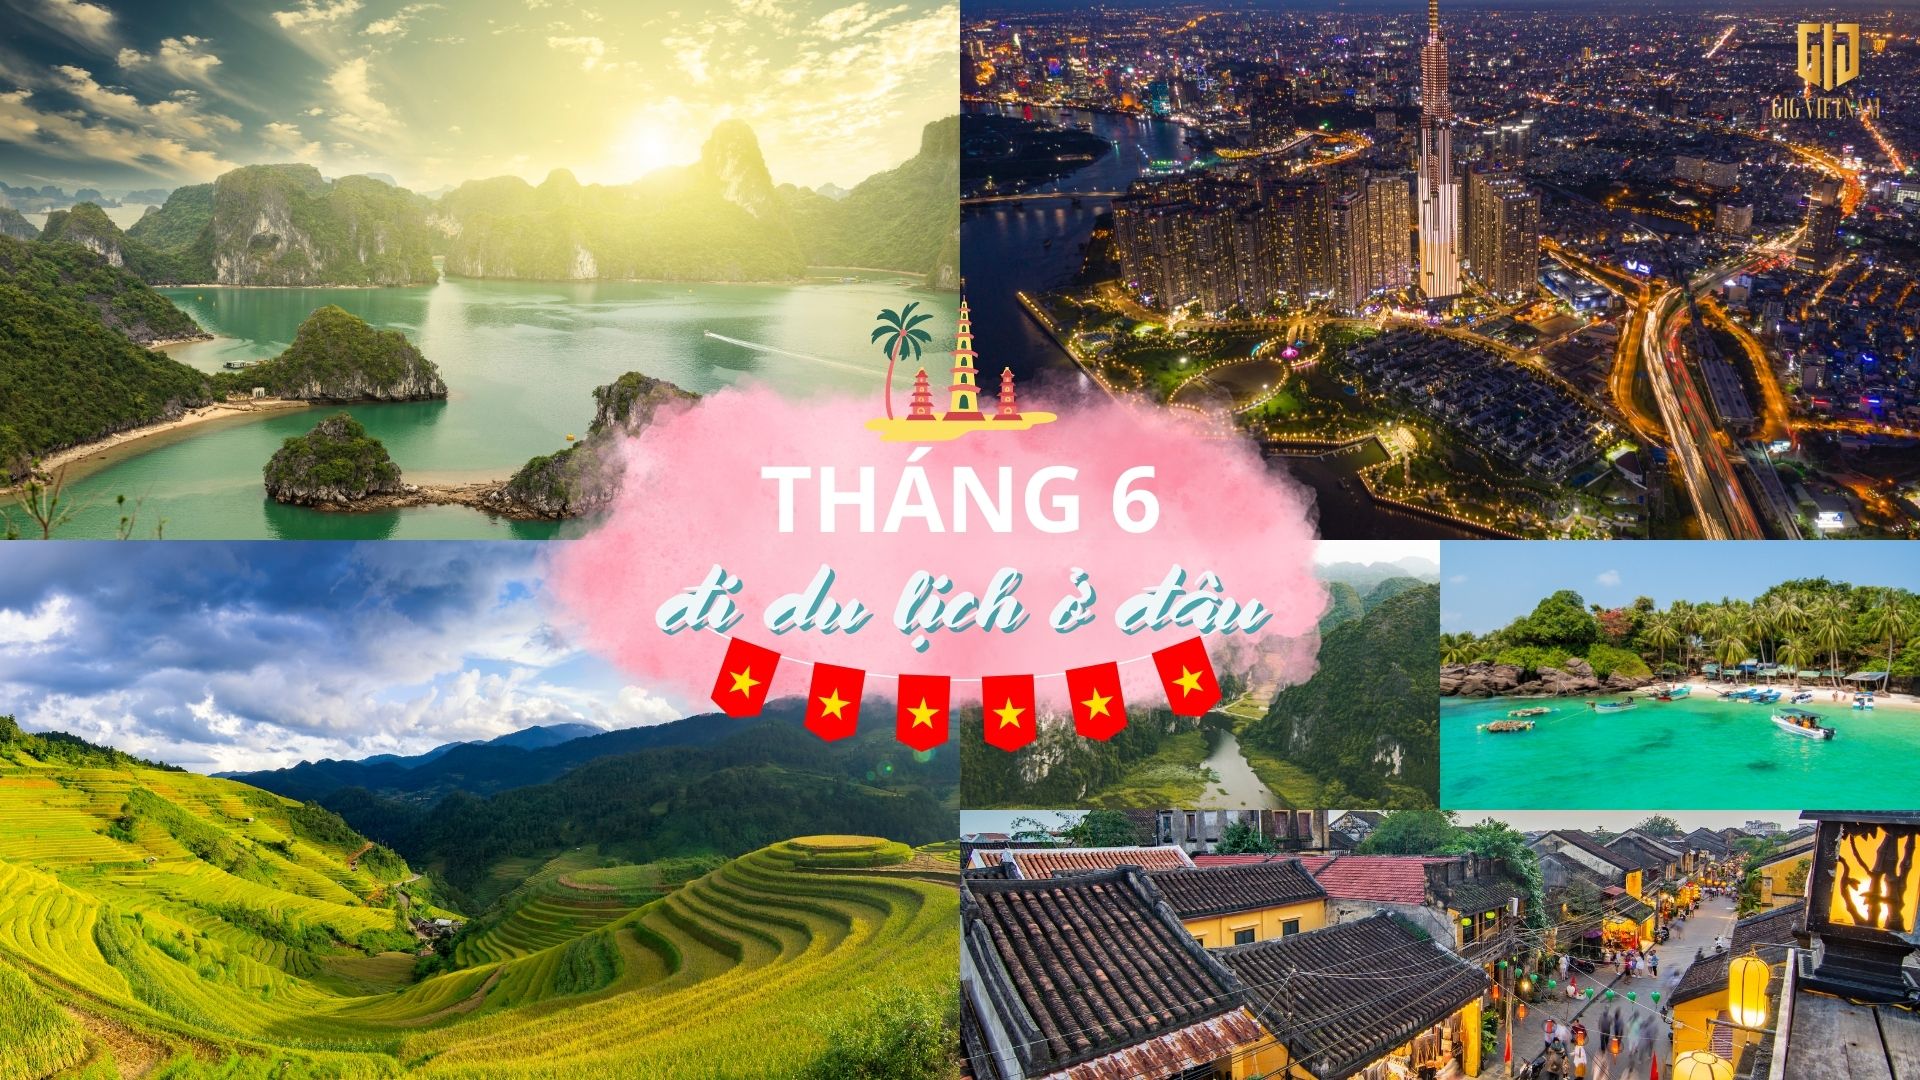 Tháng 6 nên đi du lịch ở đâu? Top 10 các tour du lịch tháng 6 hàng đầu Việt Nam